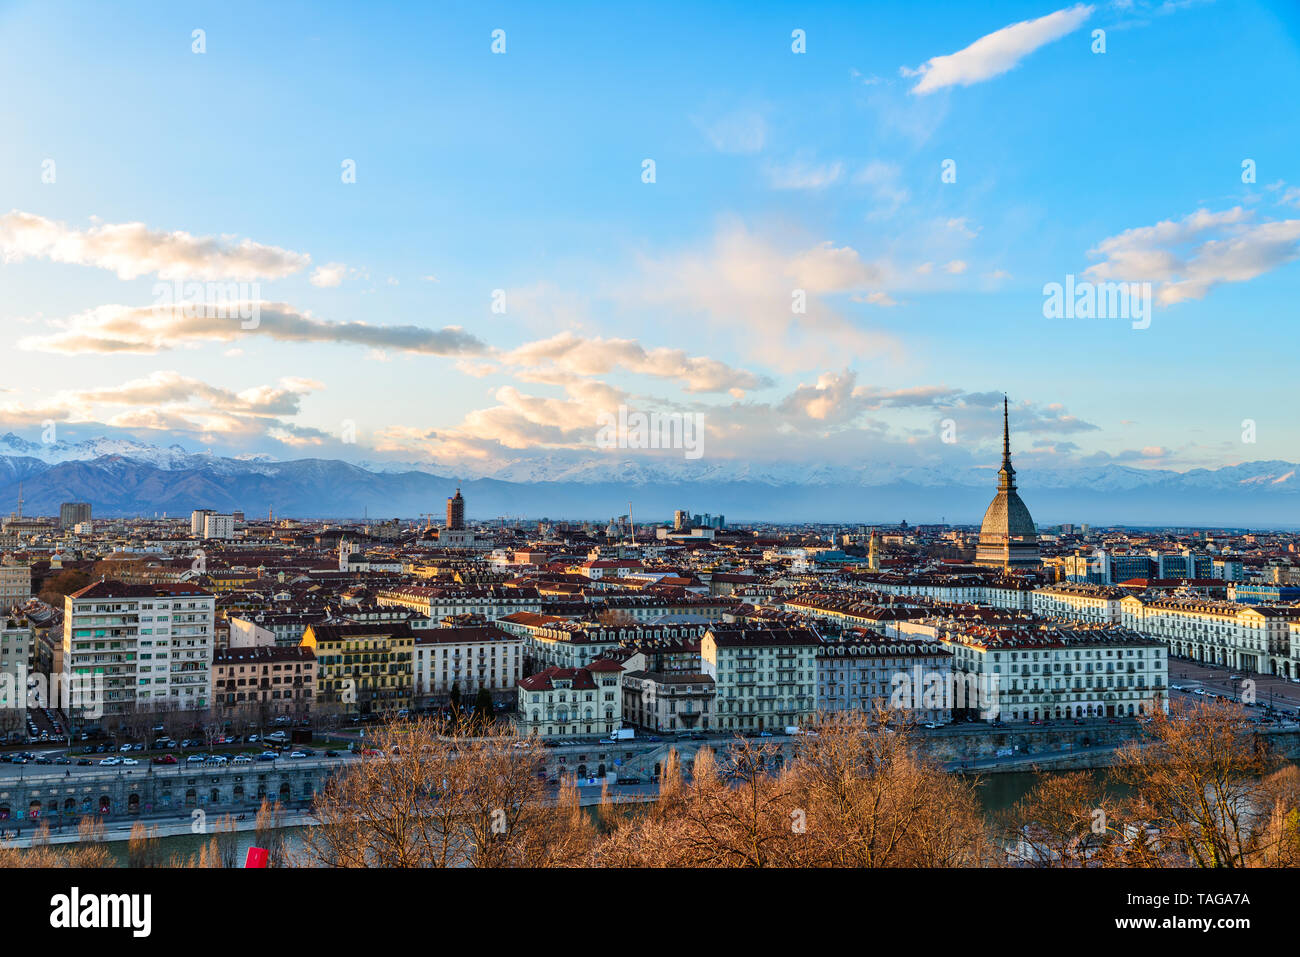 Ville de Turin au coucher du soleil. Torino, Italie, panorama Vue urbaine avec la Mole Antonelliana sur la ville. Lumière colorée pittoresque et ciel dramatique. Banque D'Images